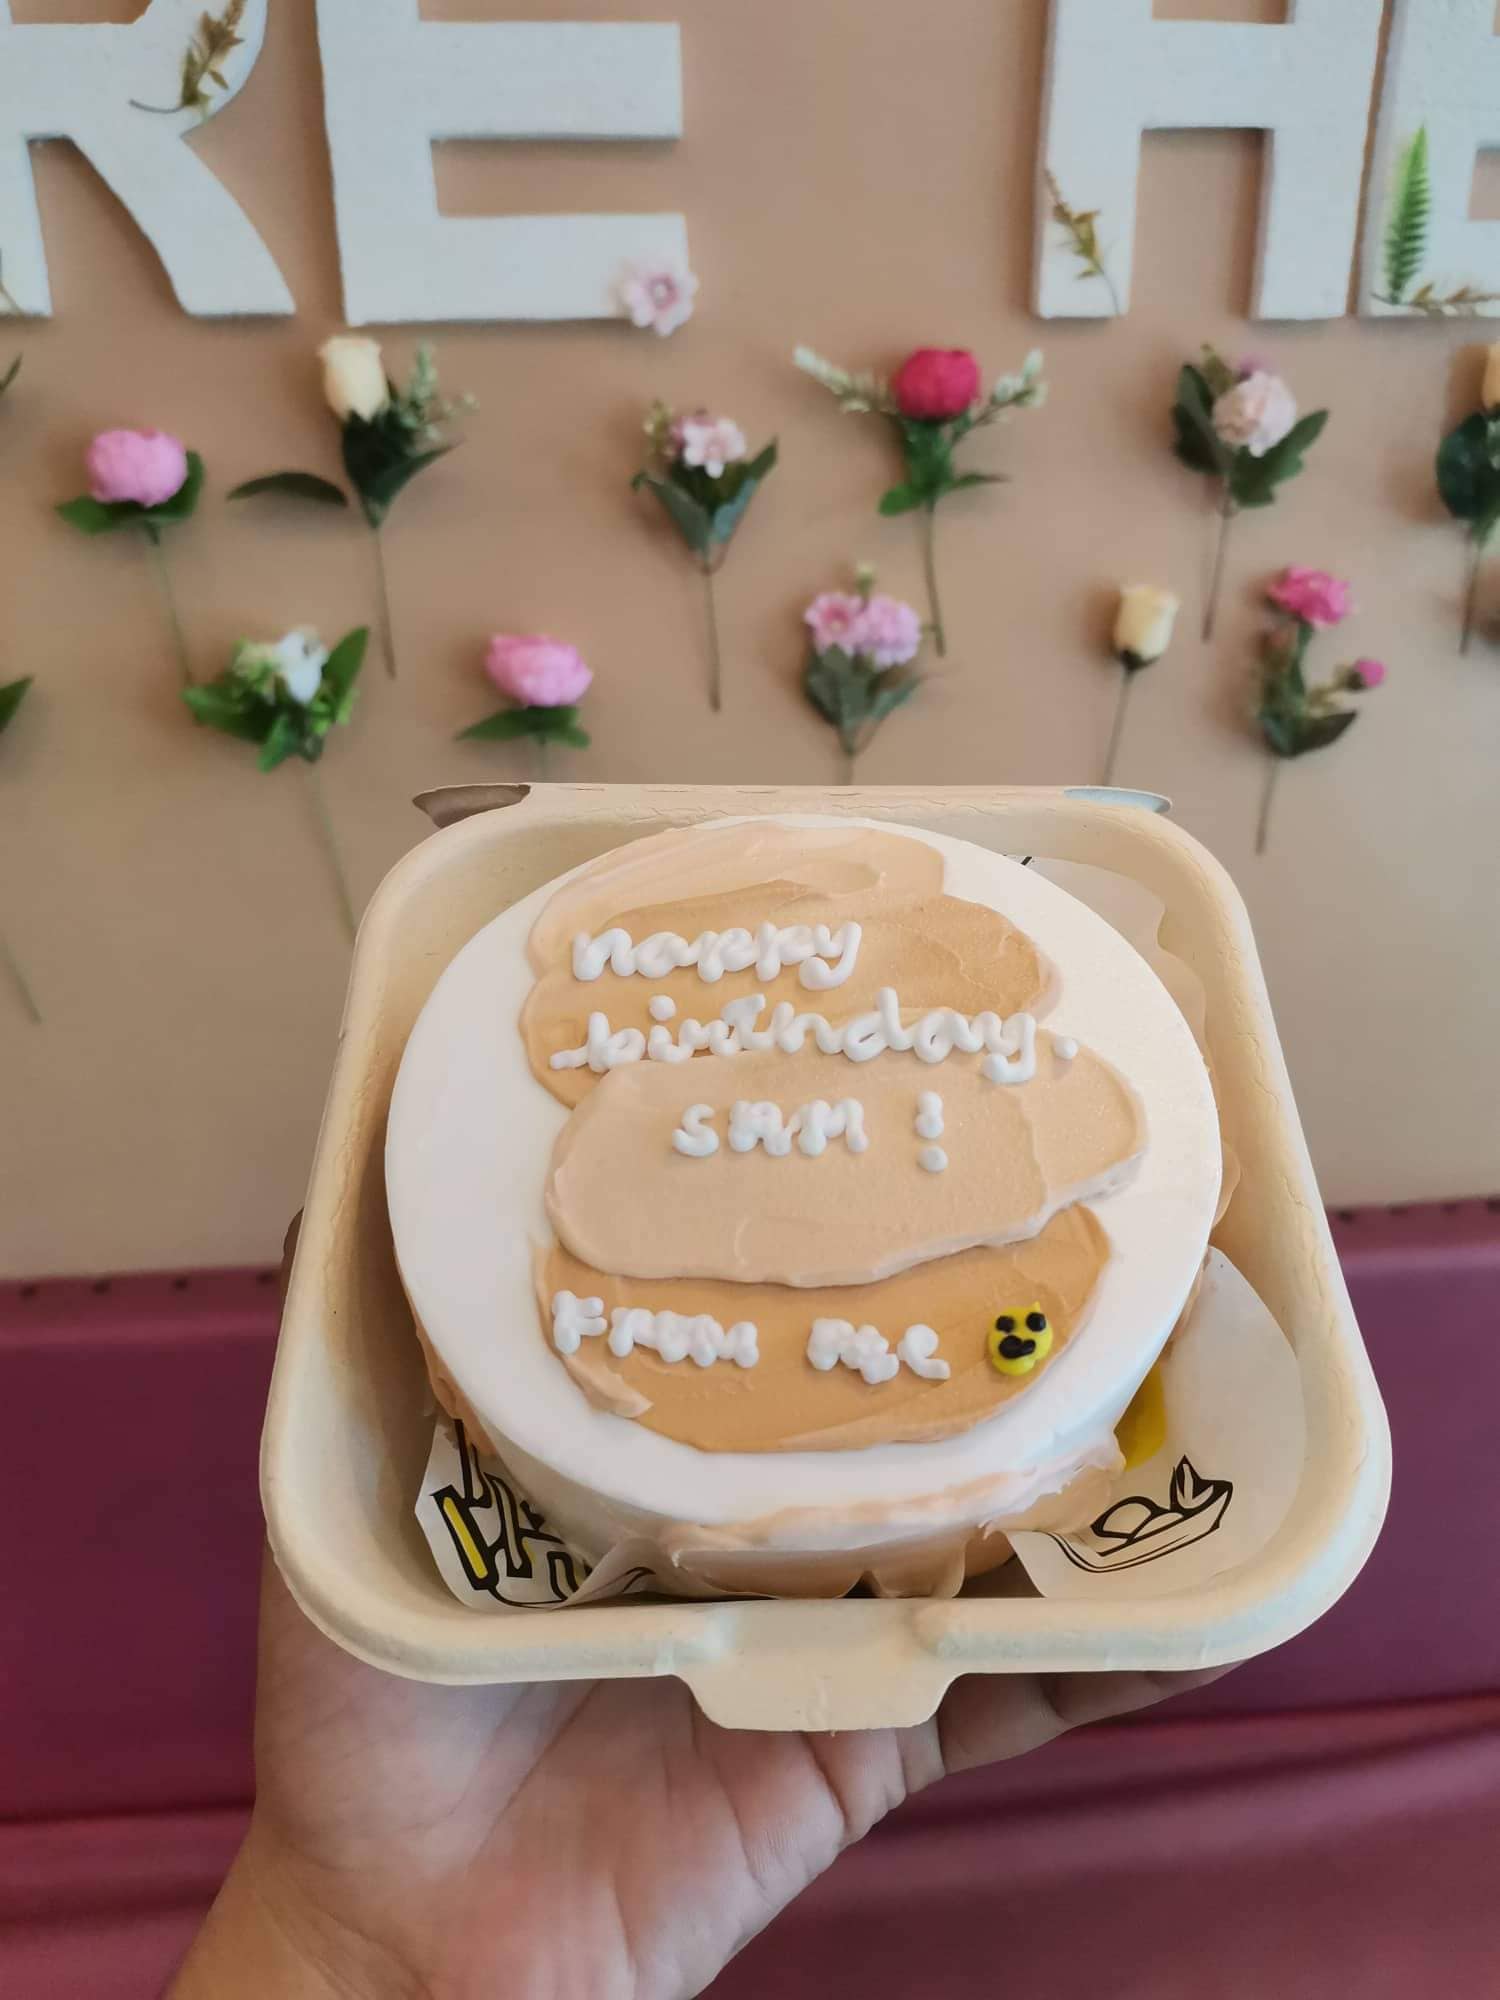 Happy birthday cake in Hanoi